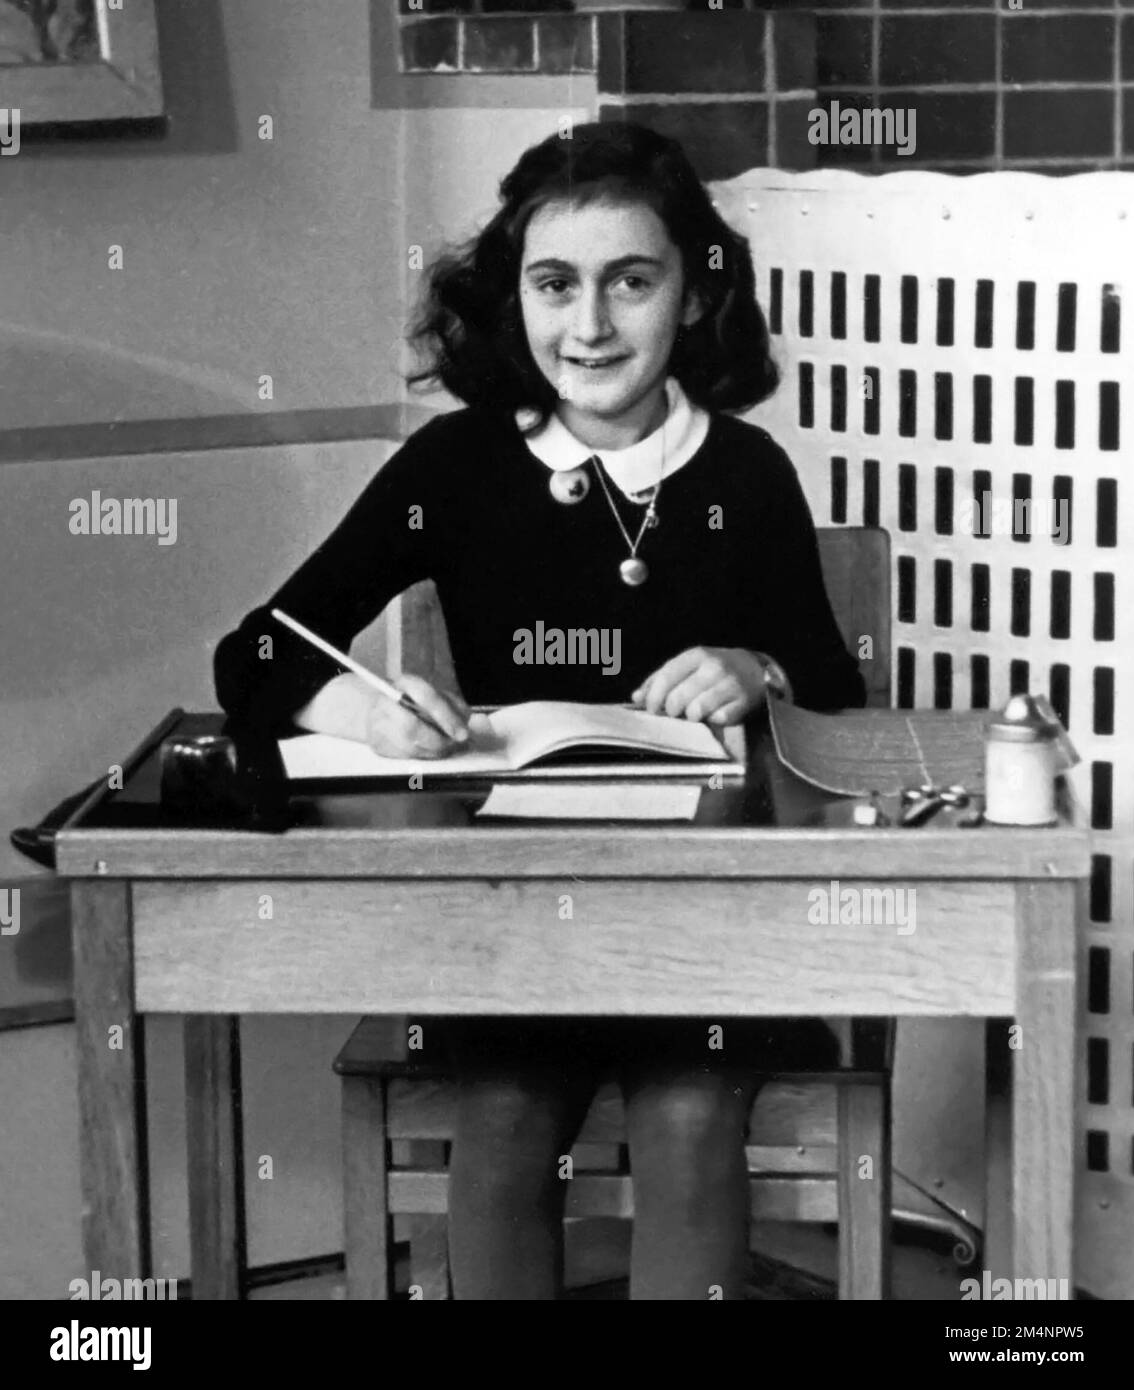 Anne Frank. Photo de l'école d'Annelies Marie 'Anne' Frank (1929-1945), la jeune fille juive qui est journal de la vie sous occupation nazie l'a rendue célèbre, 1940 Banque D'Images